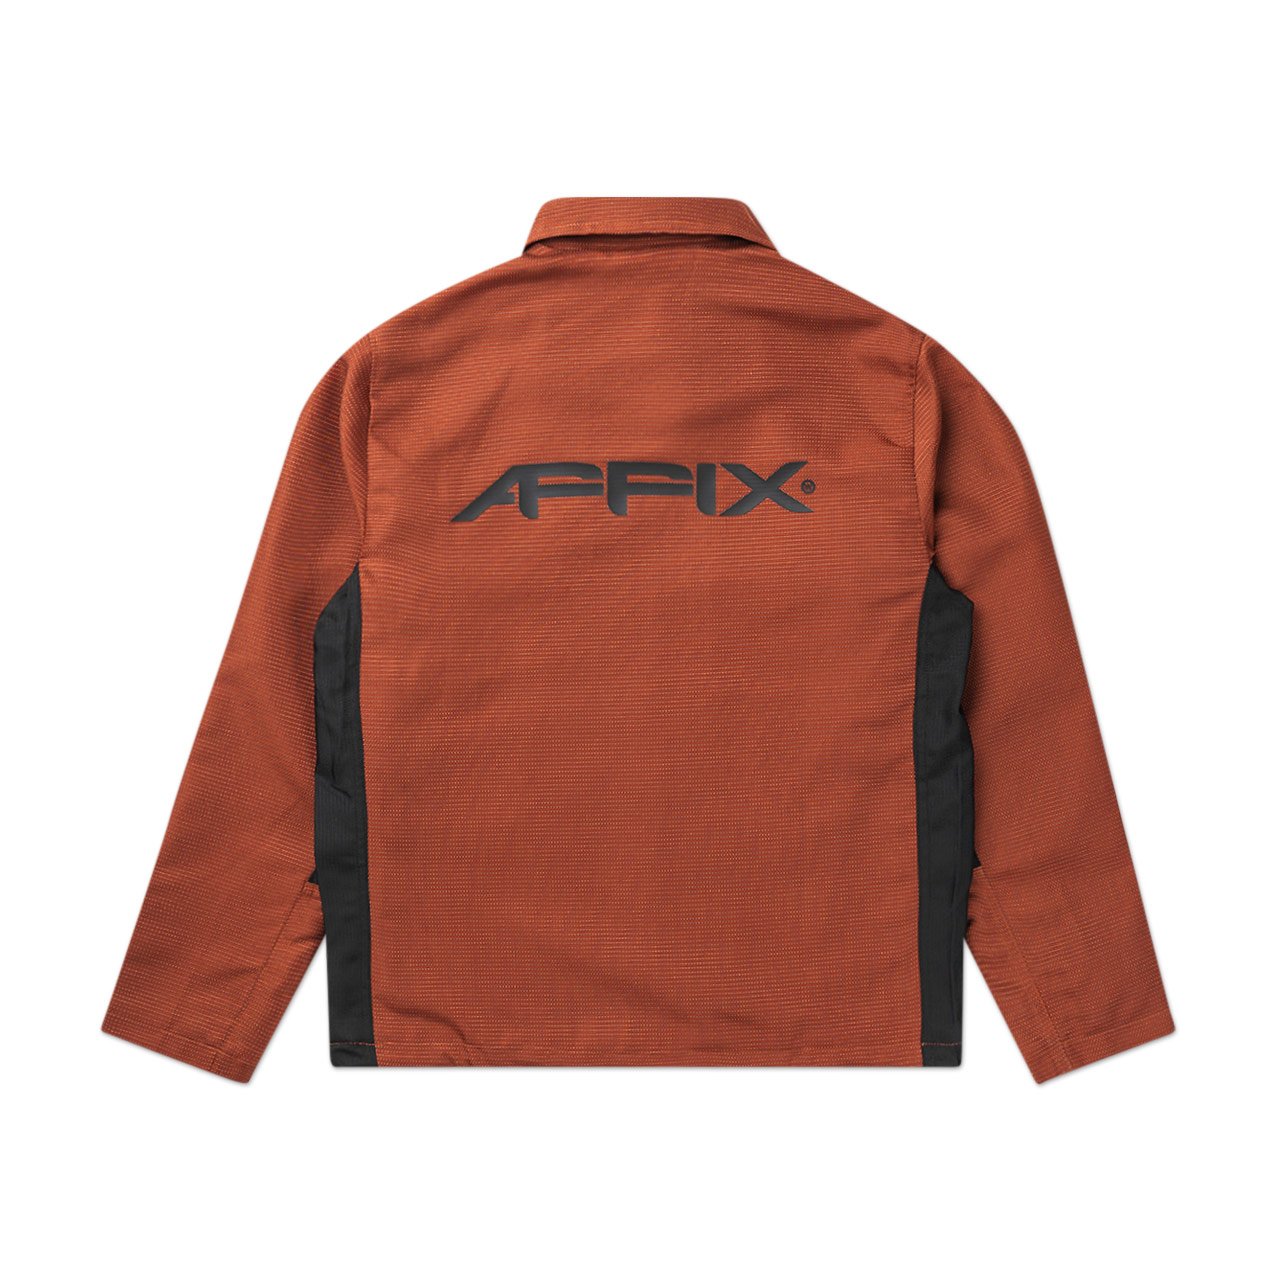 affix visibility coach jacket (orange) - aw20jk01 - a.plus - Image - 2